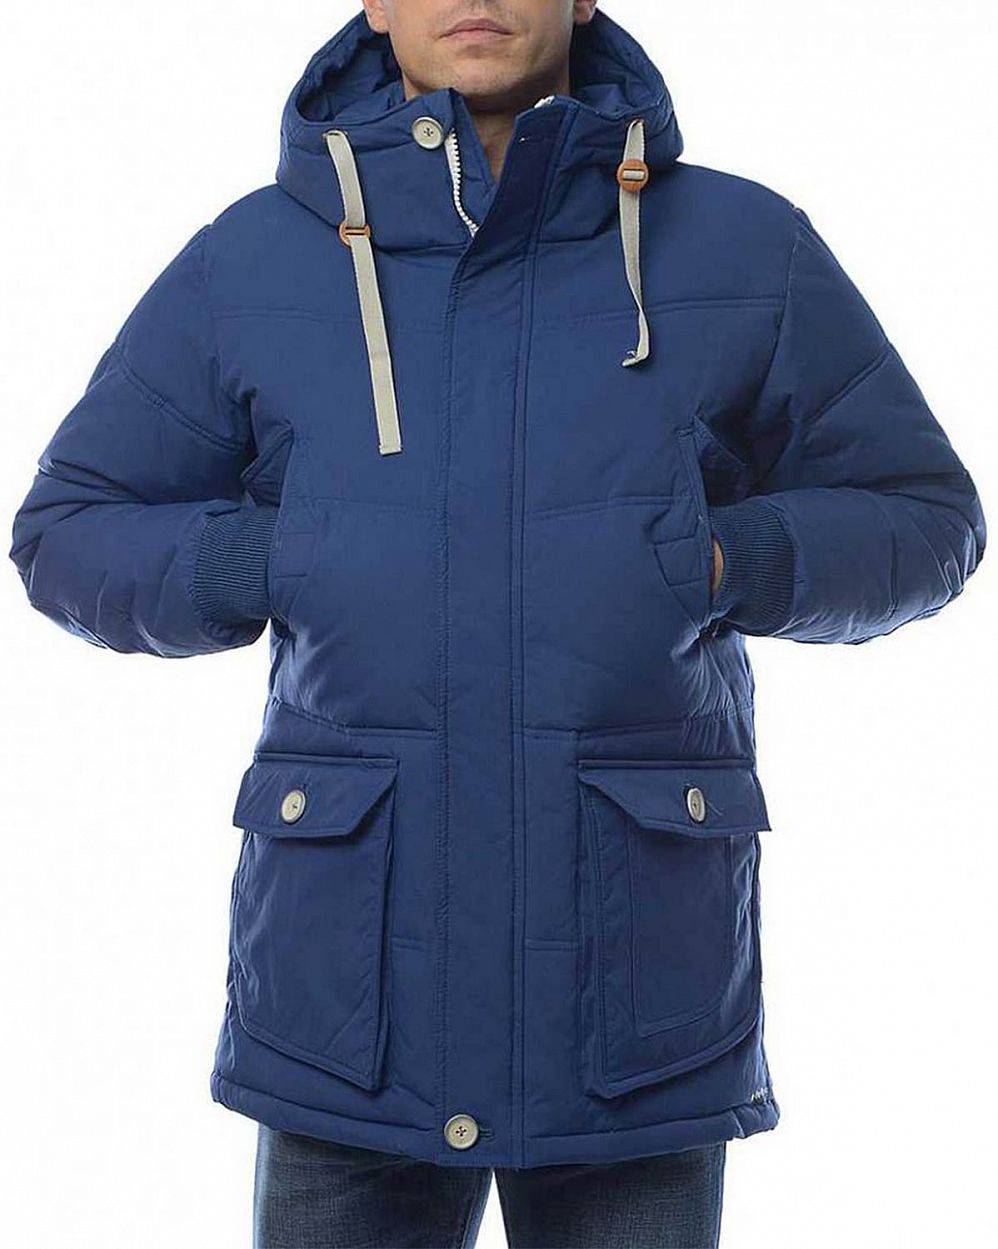 Куртка мужская зимняя Elvine Oskar Blue отзывы